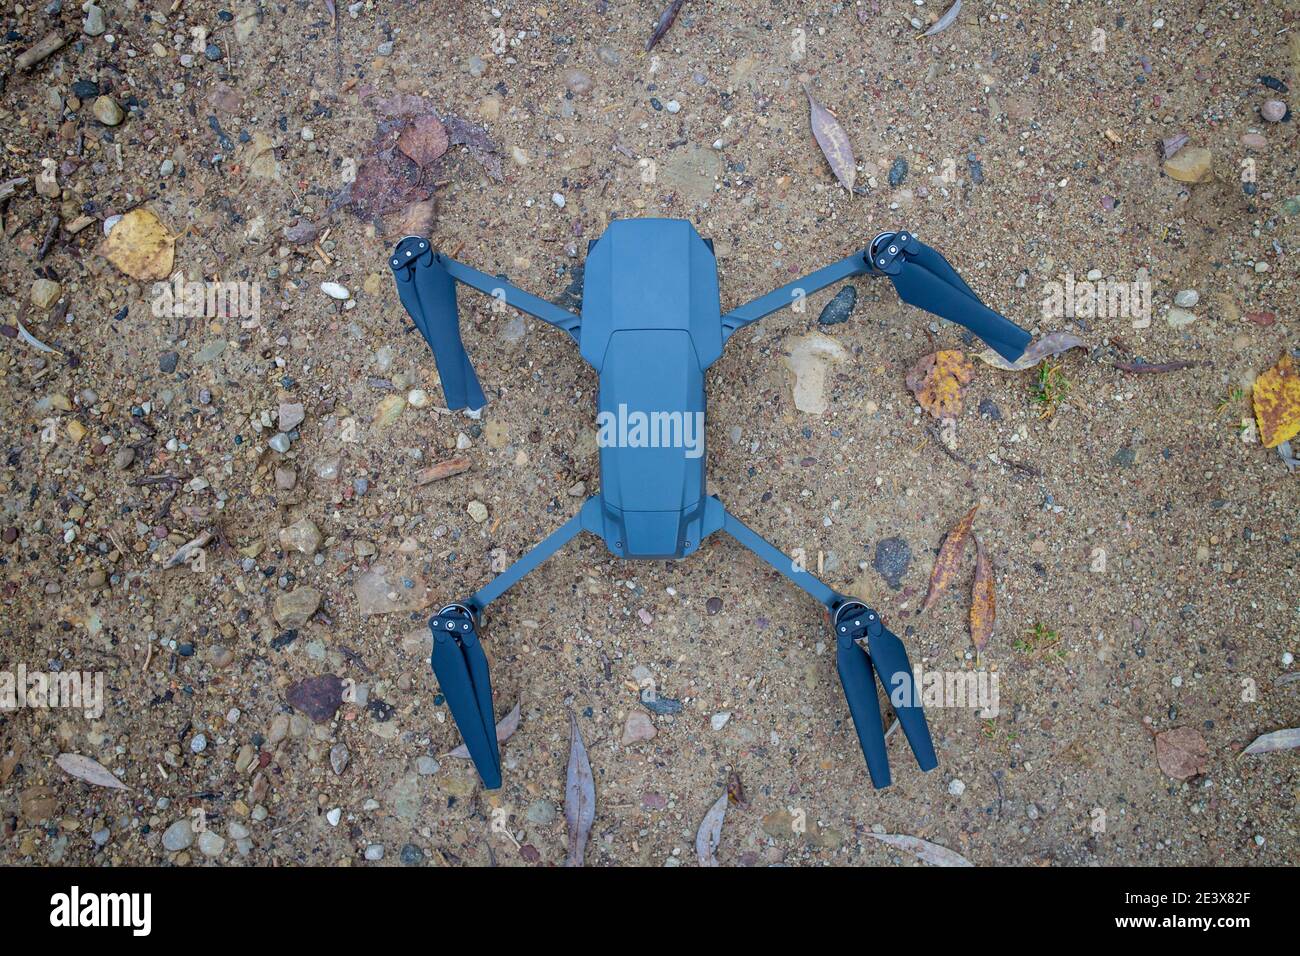 Kamera-Drohne für Luftaufnahmen und Fotografie am Boden Vor dem Flug Stockfoto